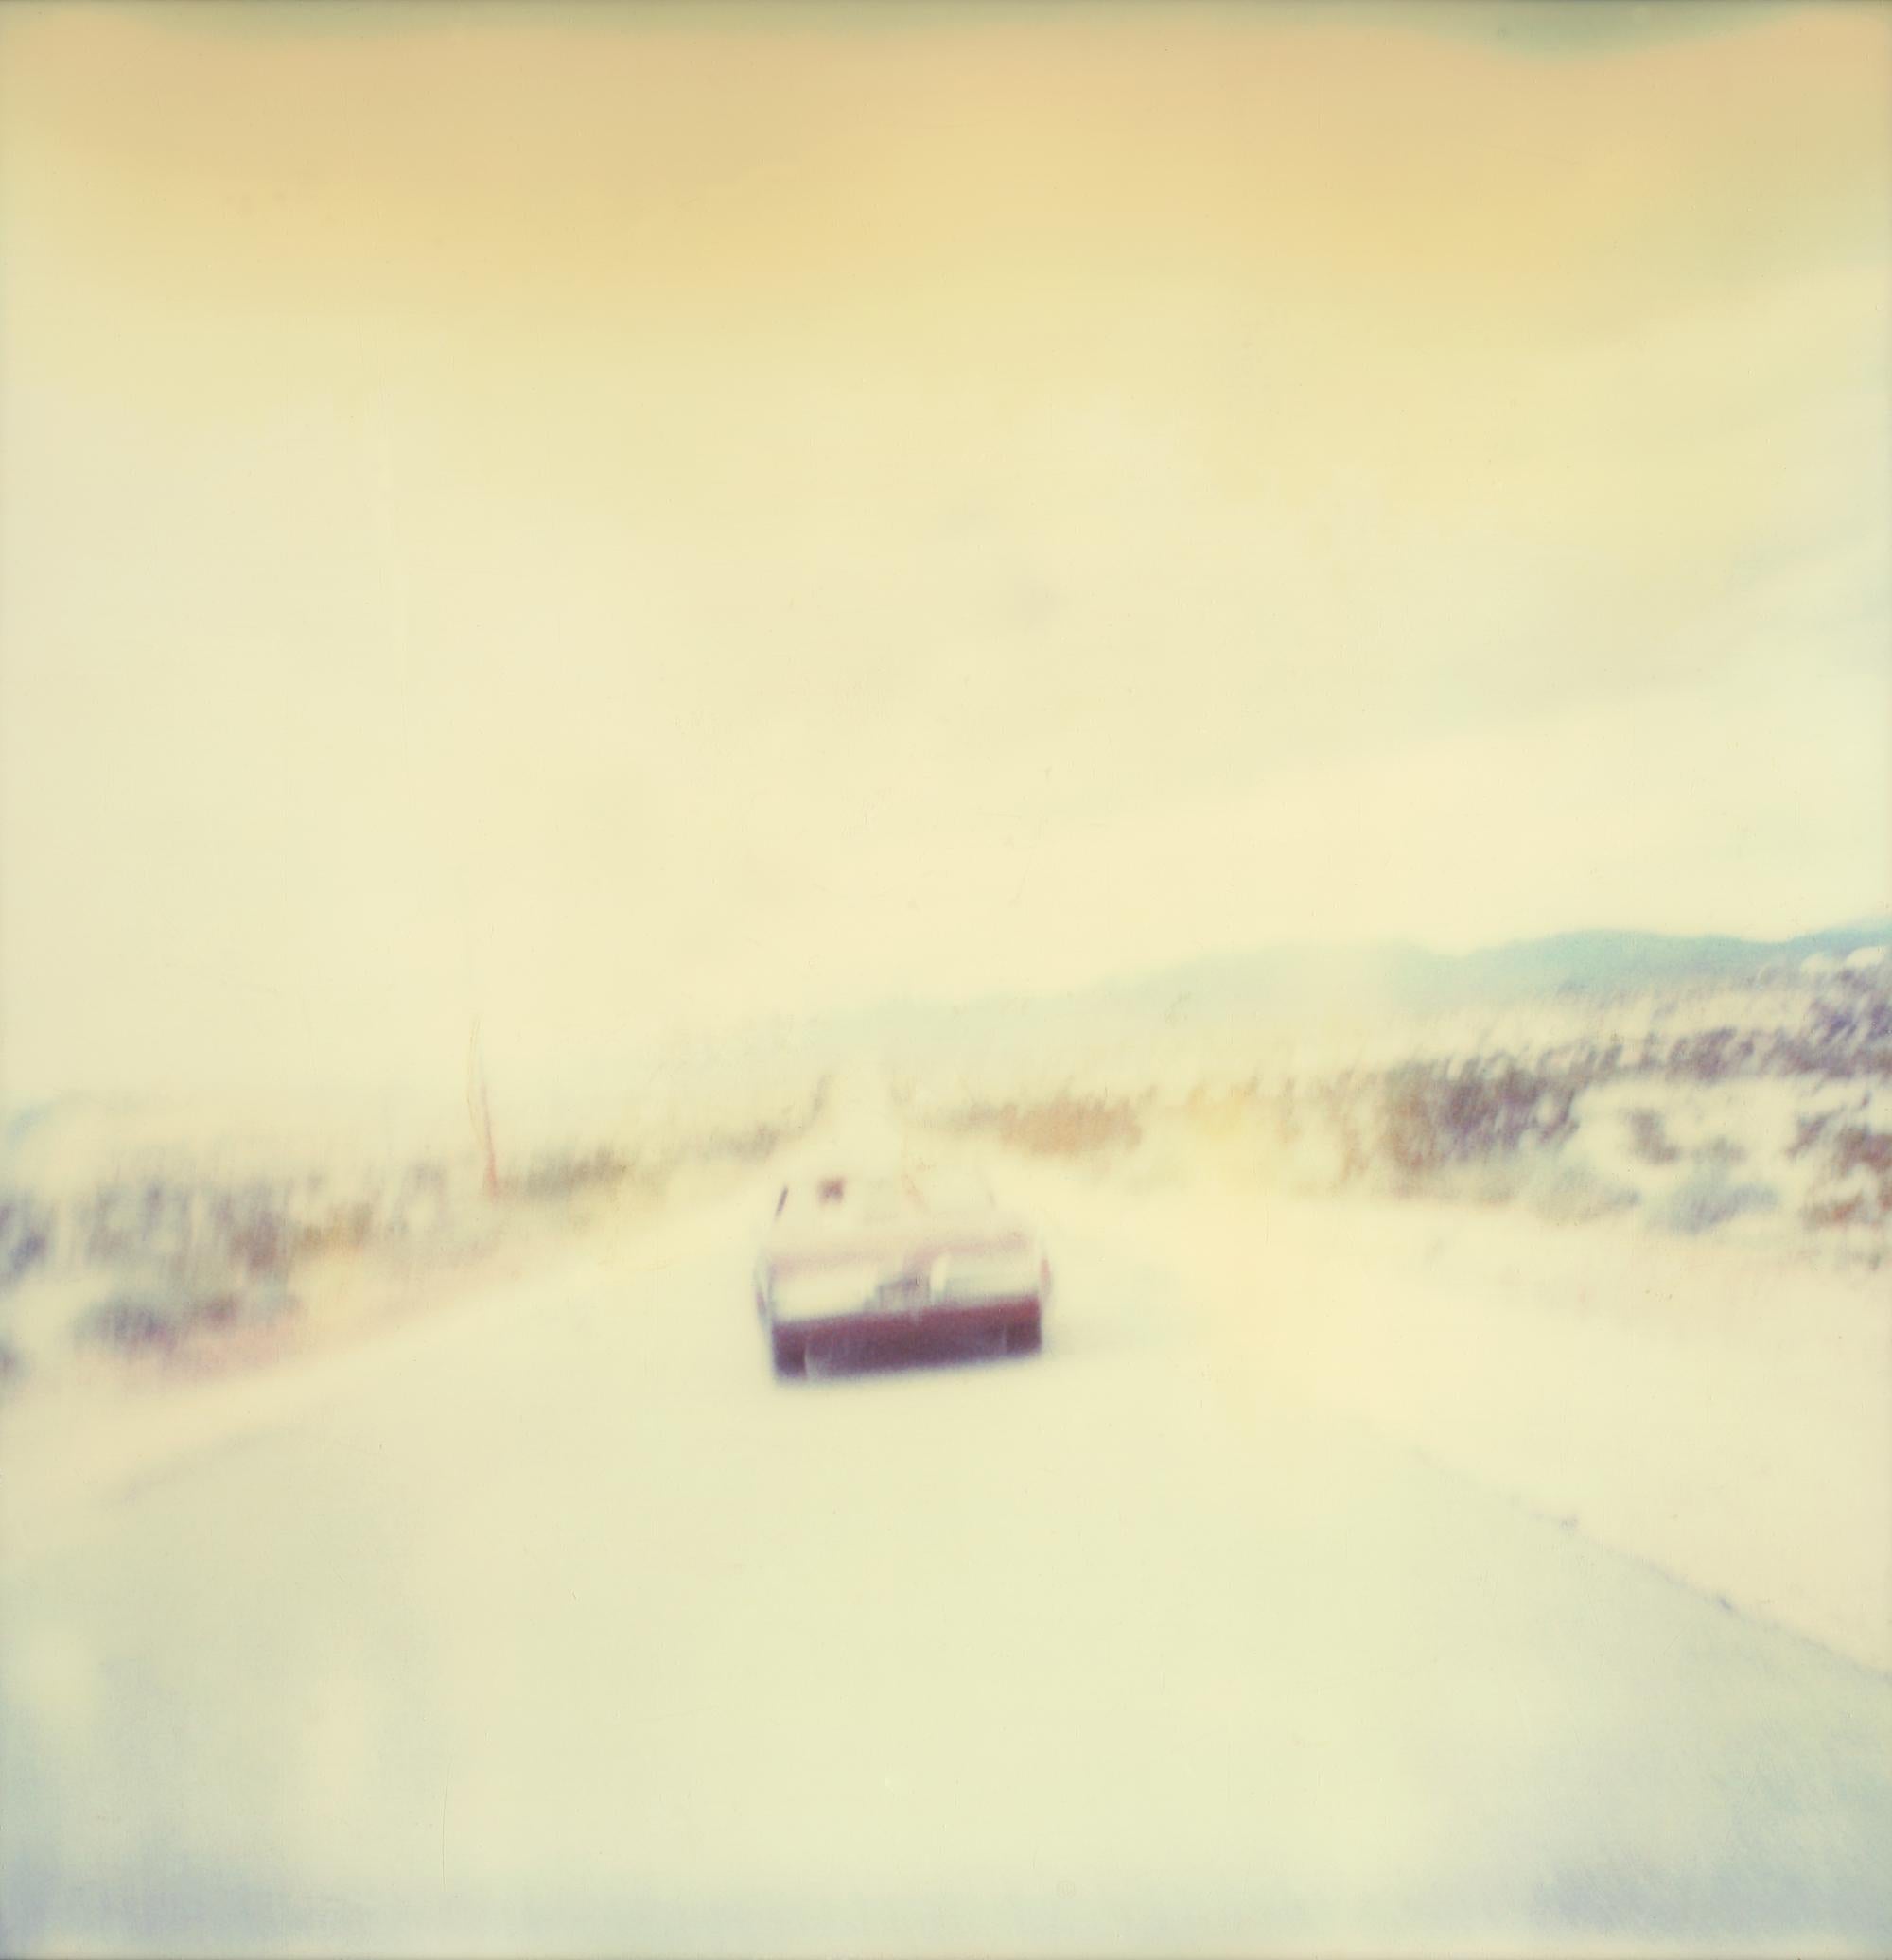 Leaving III (Sidewinder) - Polaroid, 21. Jahrhundert, Contemporary (Beige), Color Photograph, von Stefanie Schneider